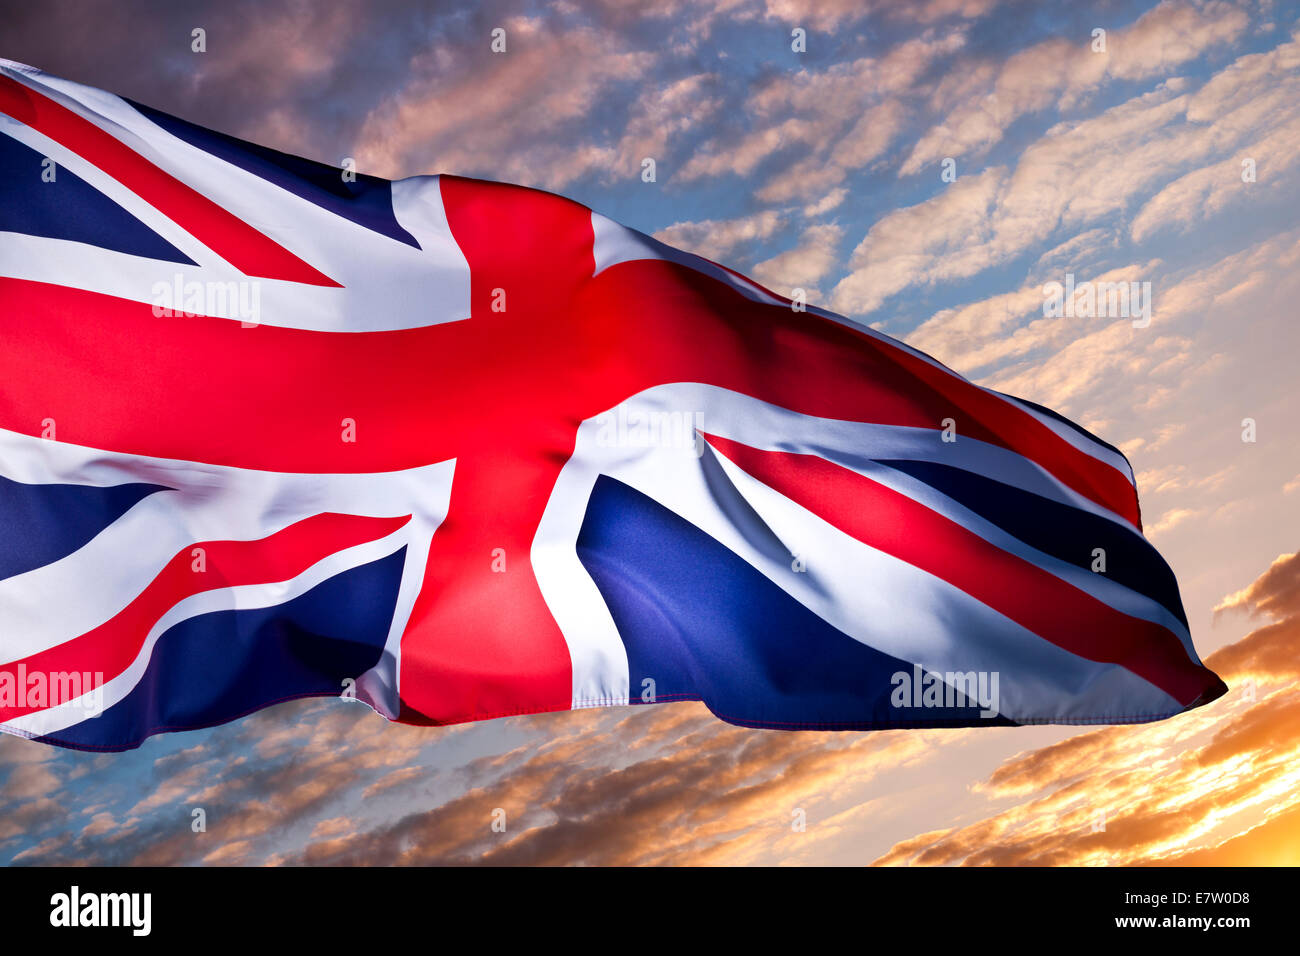 Una imagen de "Union Jack" - bandera de unión de Gran Bretaña contra un nuevo amanecer amanecer. Foto de stock